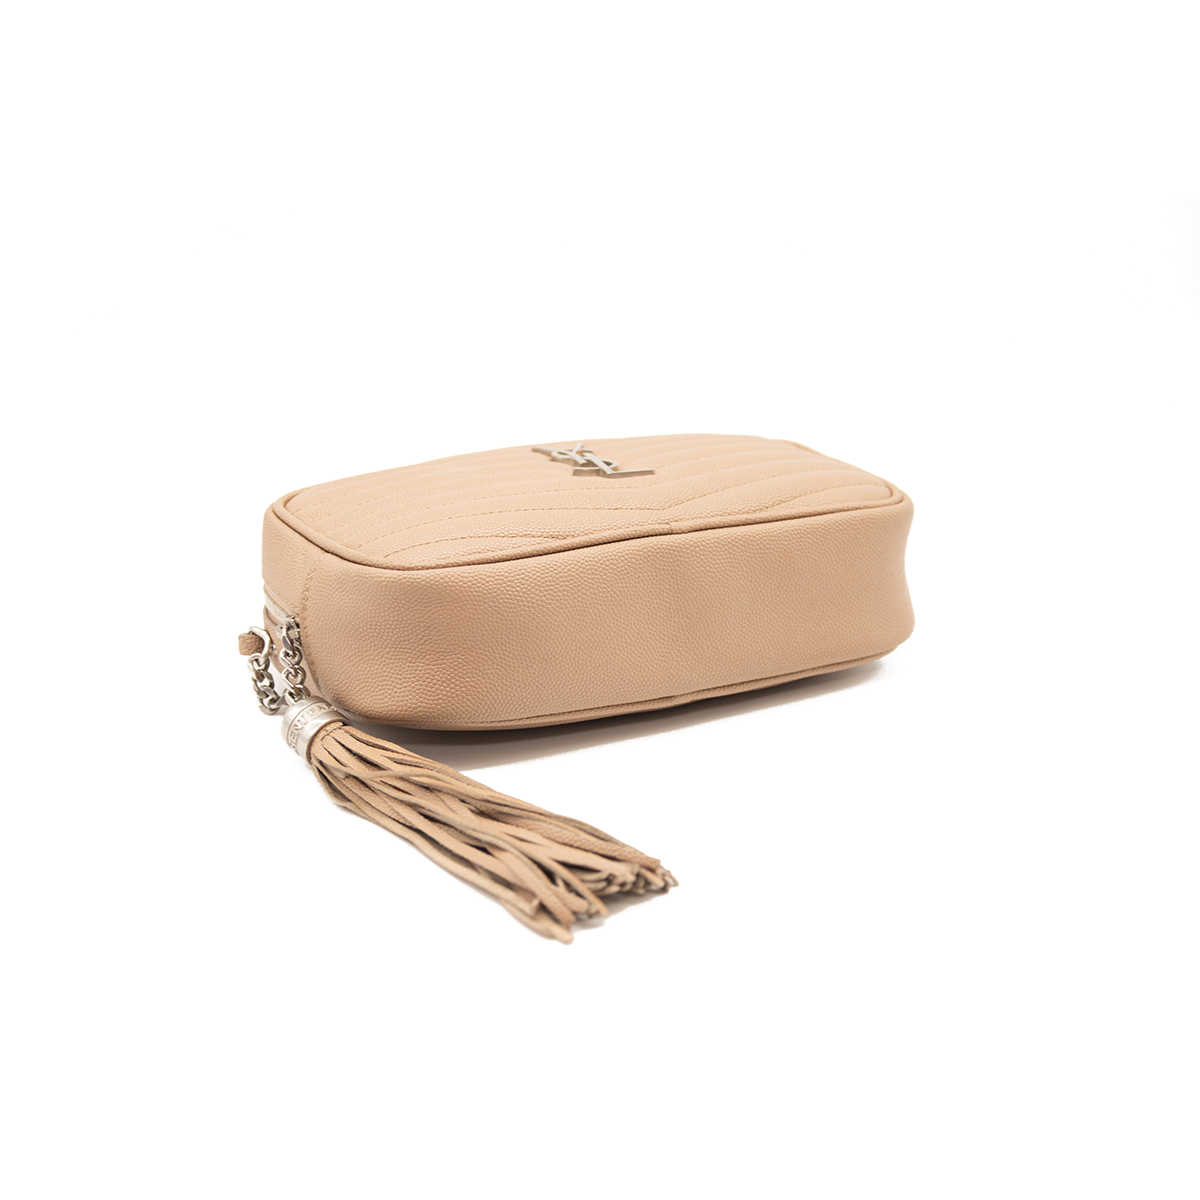 Saint Laurent Mini Lou Camera Bag In Textured Matelasse Leather